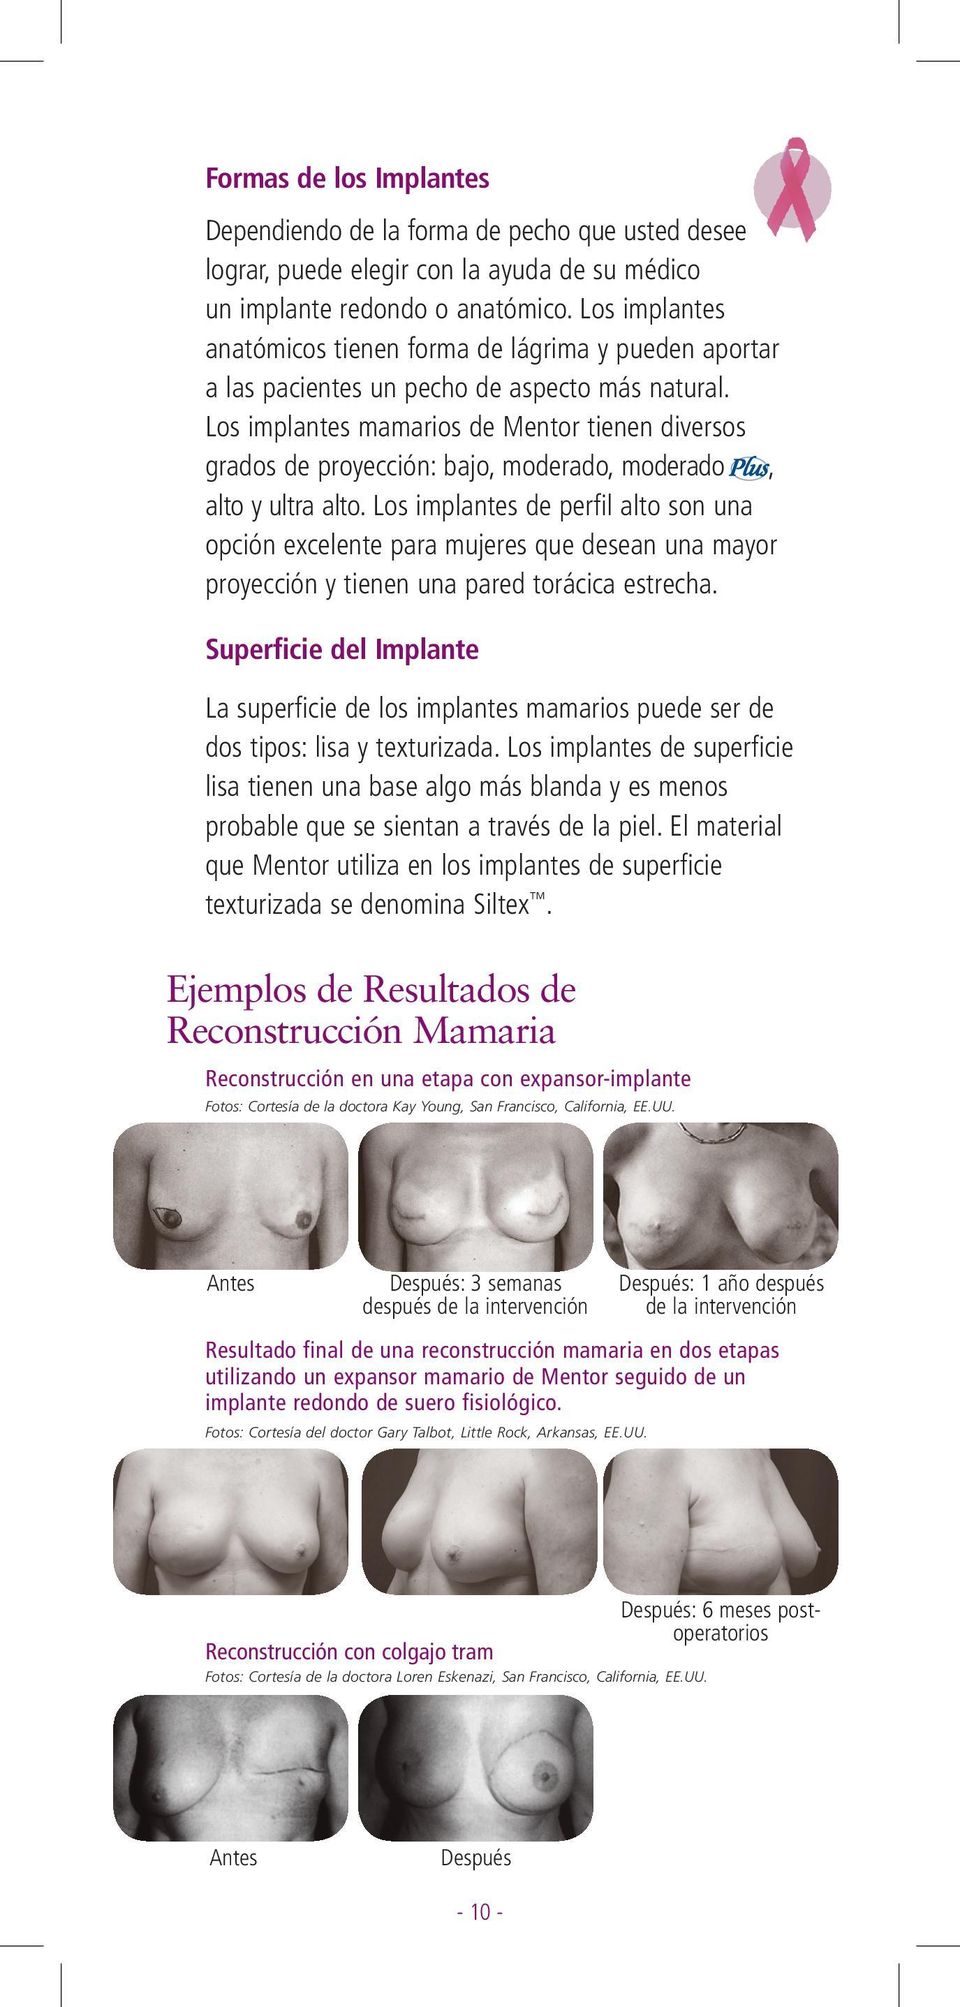 Los implantes mamarios de Mentor tienen diversos grados de proyección: bajo, moderado, moderado, alto y ultra alto.